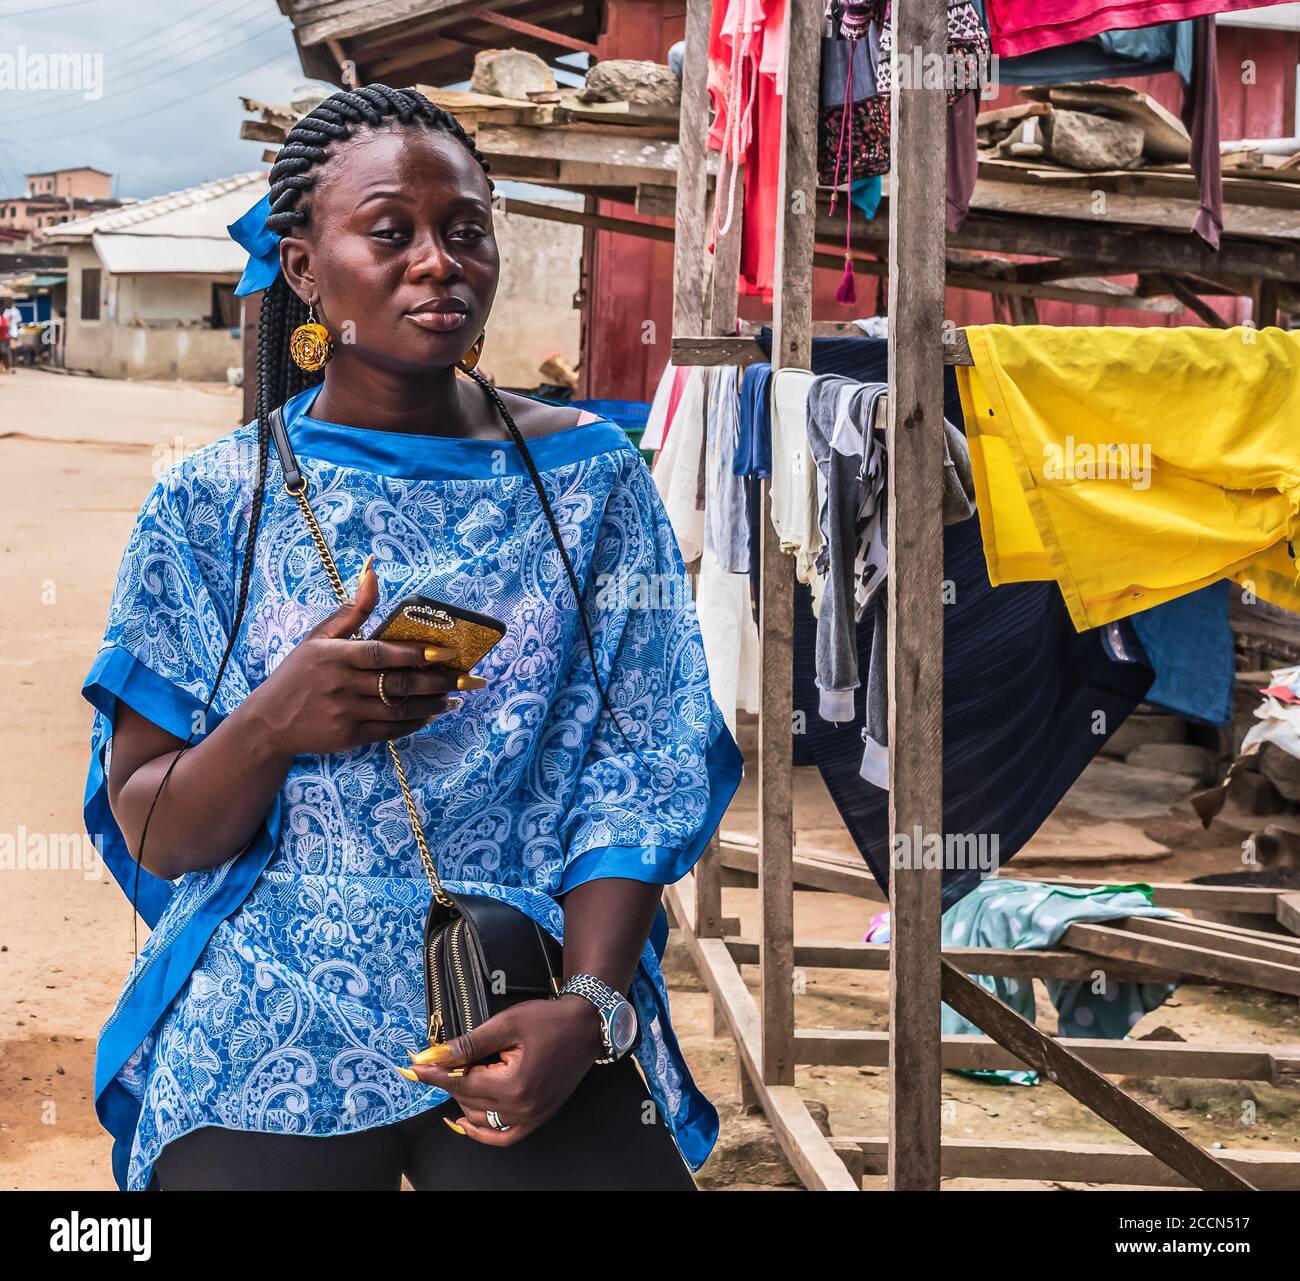 Ghana people immagini e fotografie stock ad alta risoluzione - Alamy